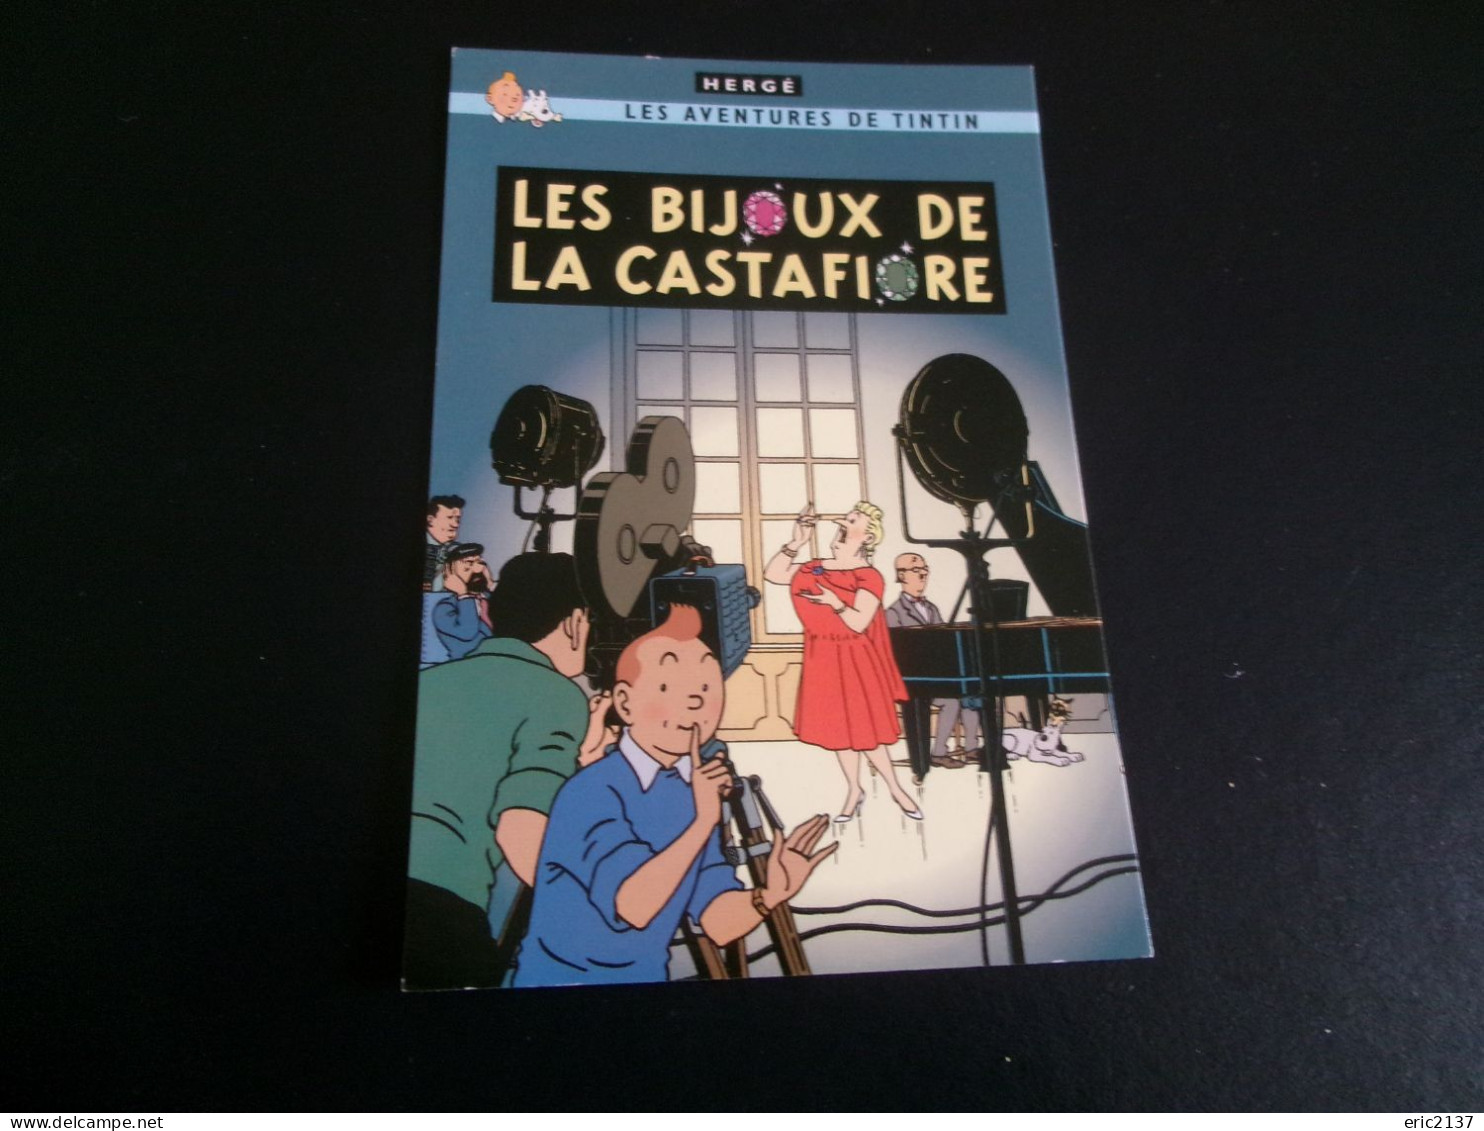 BELLE ILLUSTRATION.."LES AVENTURES DE TINTIN..LES BIJOUX DE LA CASTAFIORE"...par HERGE - Fumetti